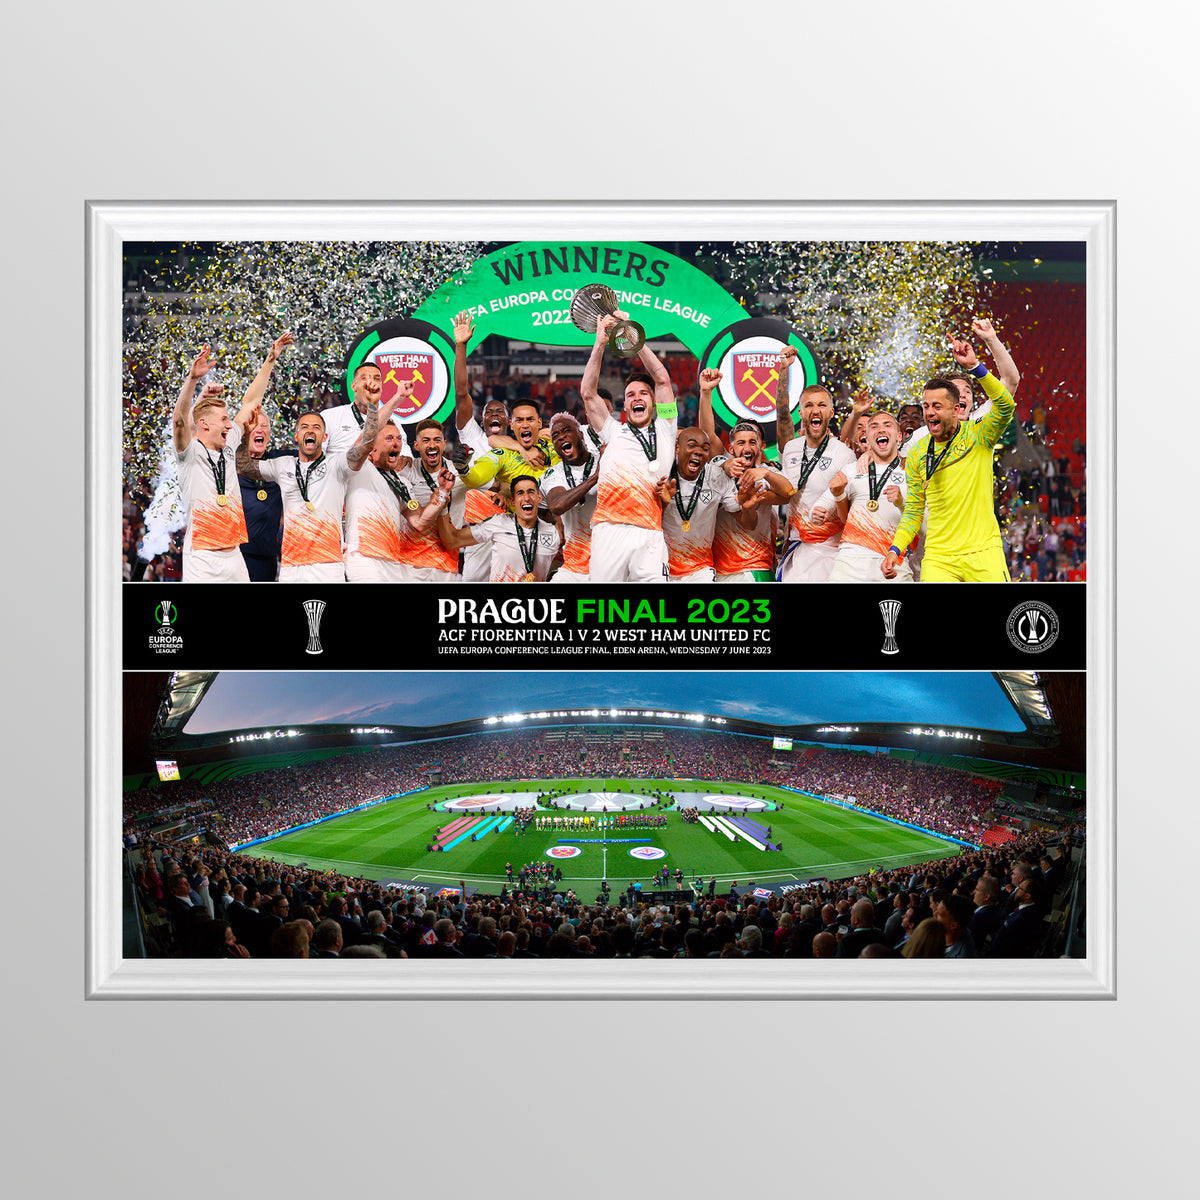 2023 UEFA Europa Conference League Final Praga Celebration Montaje con elevación de trofeos y línea panorámica